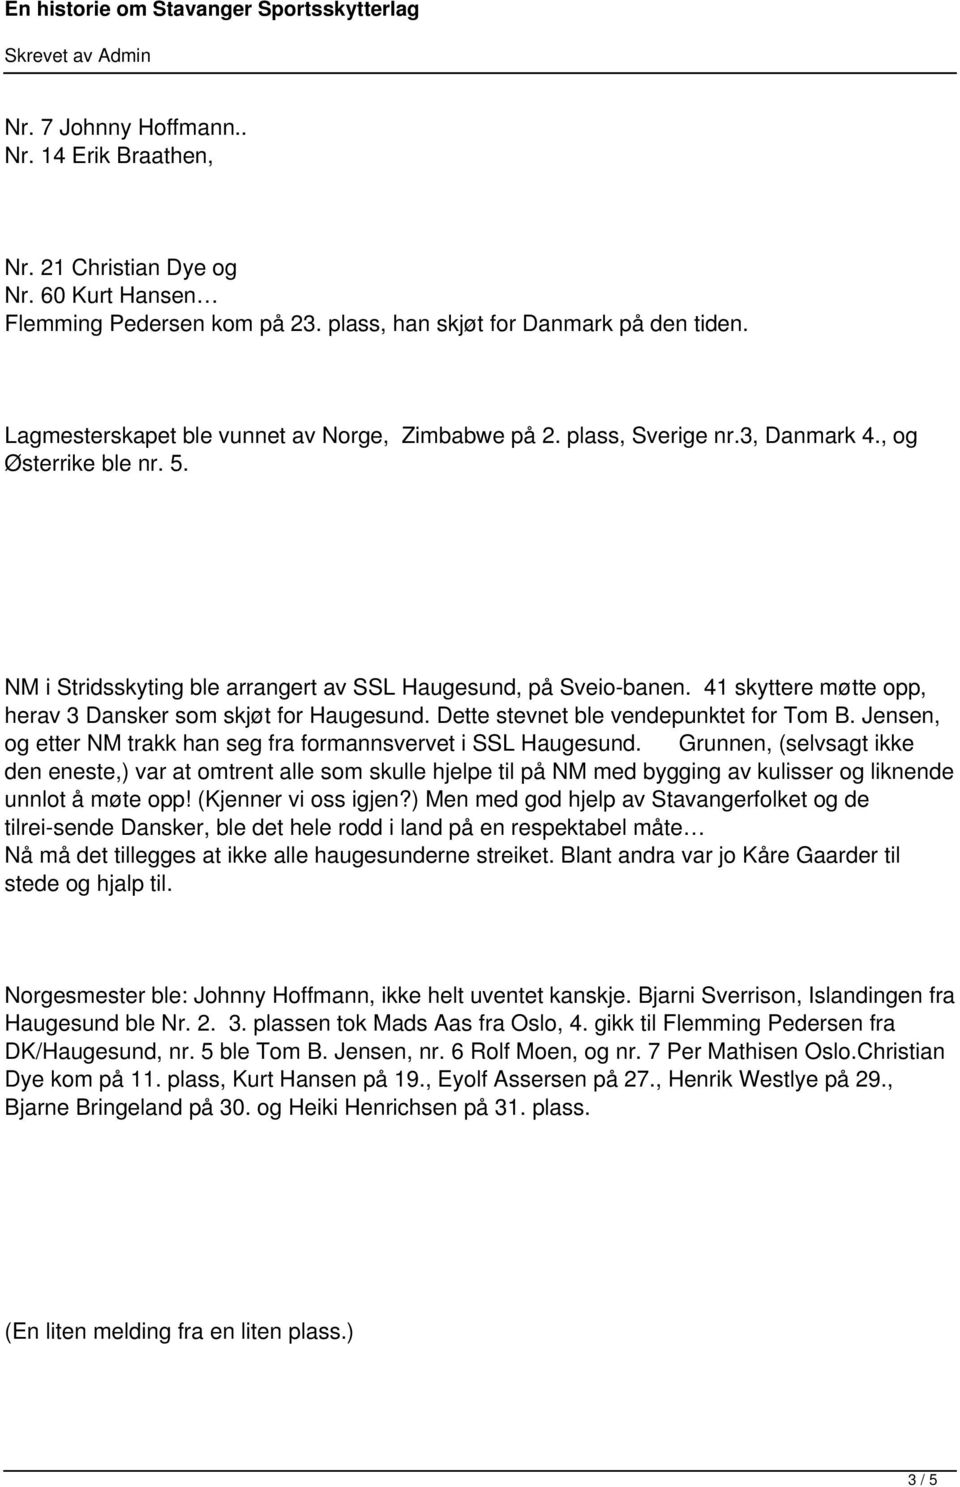 41 skyttere møtte opp, herav 3 Dansker som skjøt for Haugesund. Dette stevnet ble vendepunktet for Tom B. Jensen, og etter NM trakk han seg fra formannsvervet i SSL Haugesund.